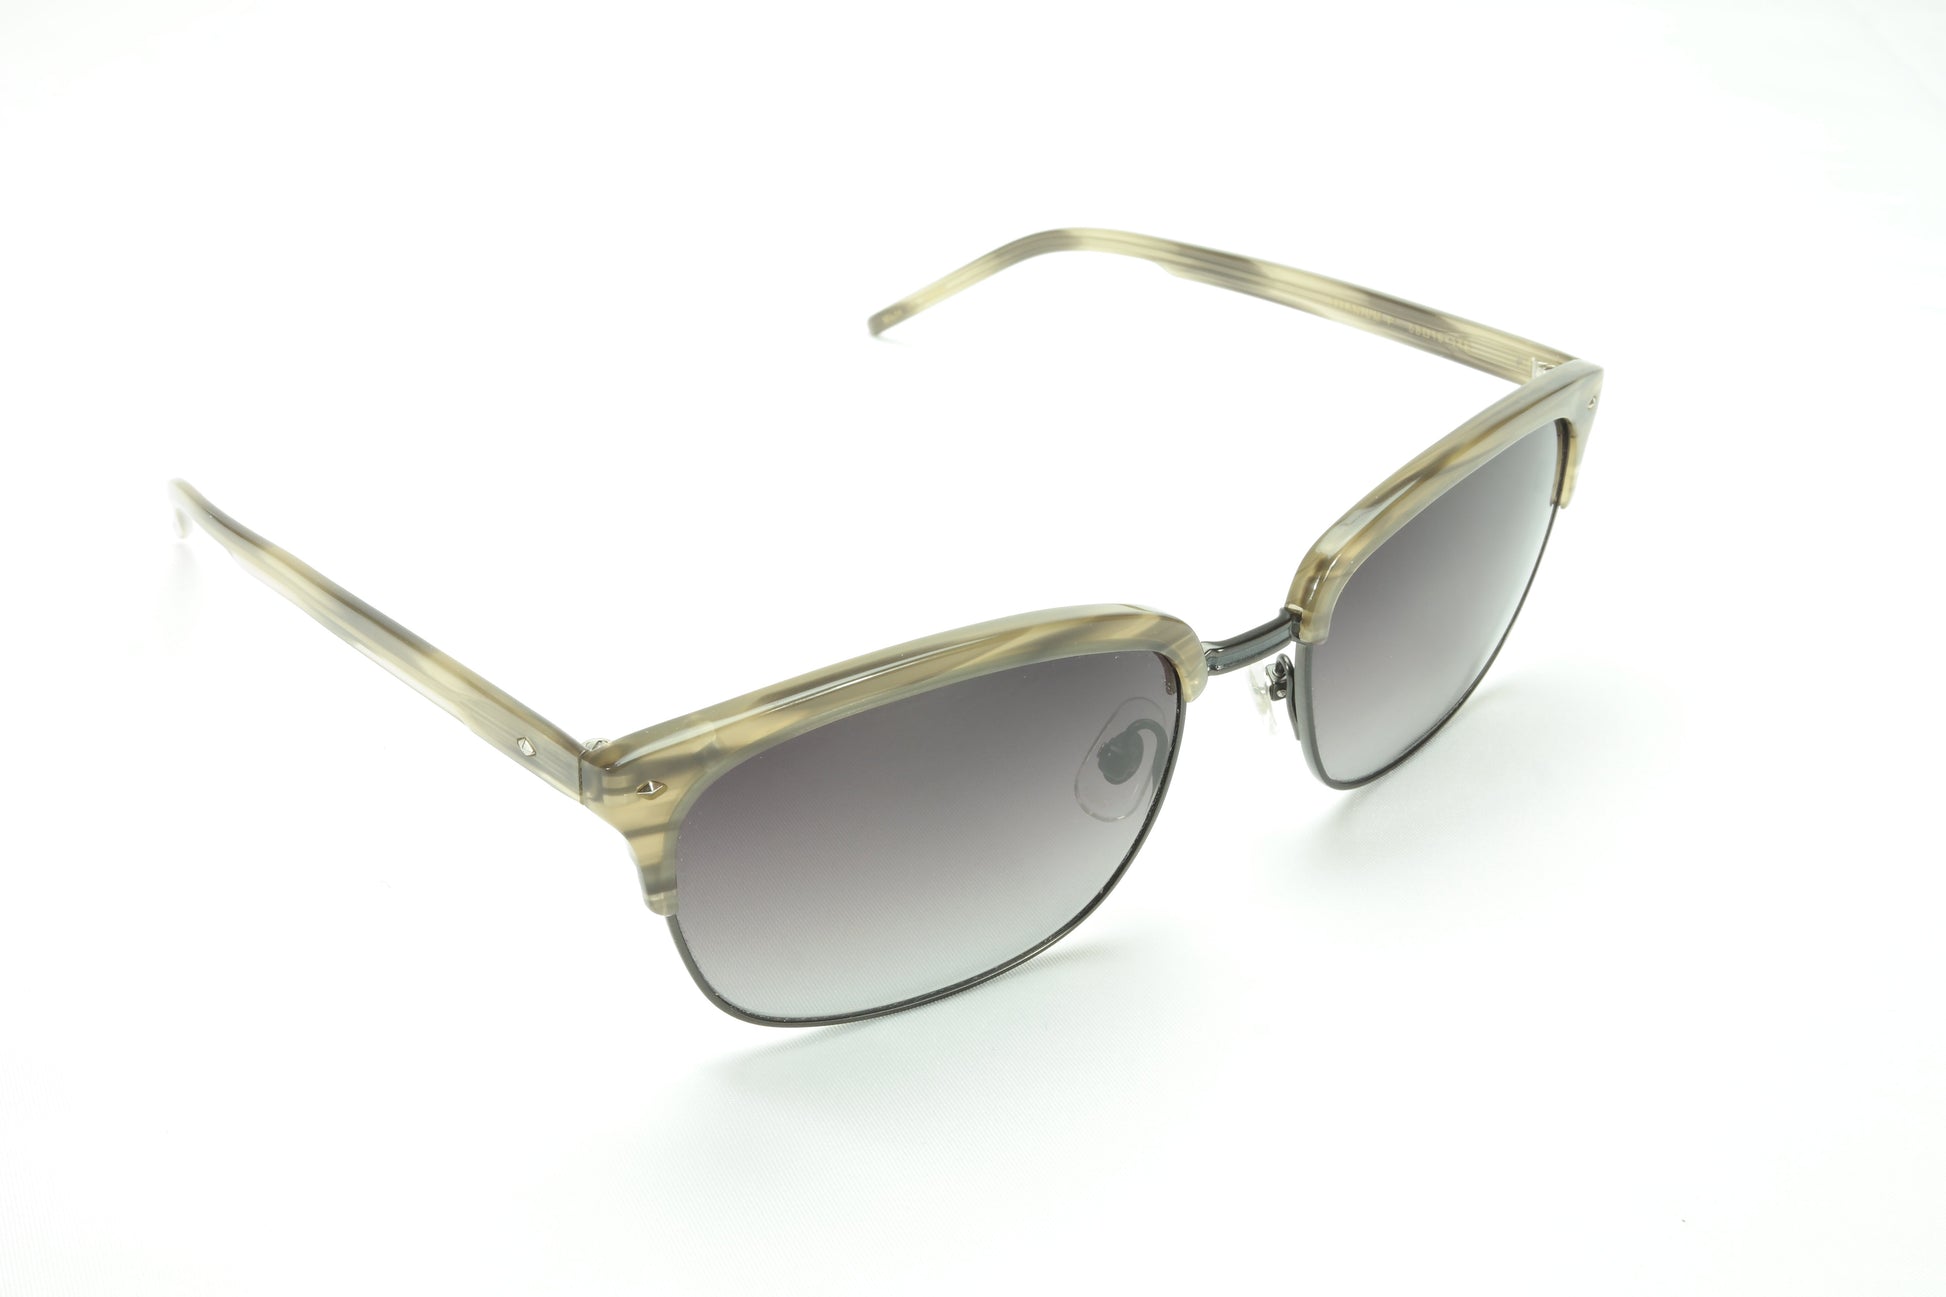 Sama Sunglasses Frame Baron  Plastic Titanium Gunmetal Japan Made 58-19-145 - Frame Bay